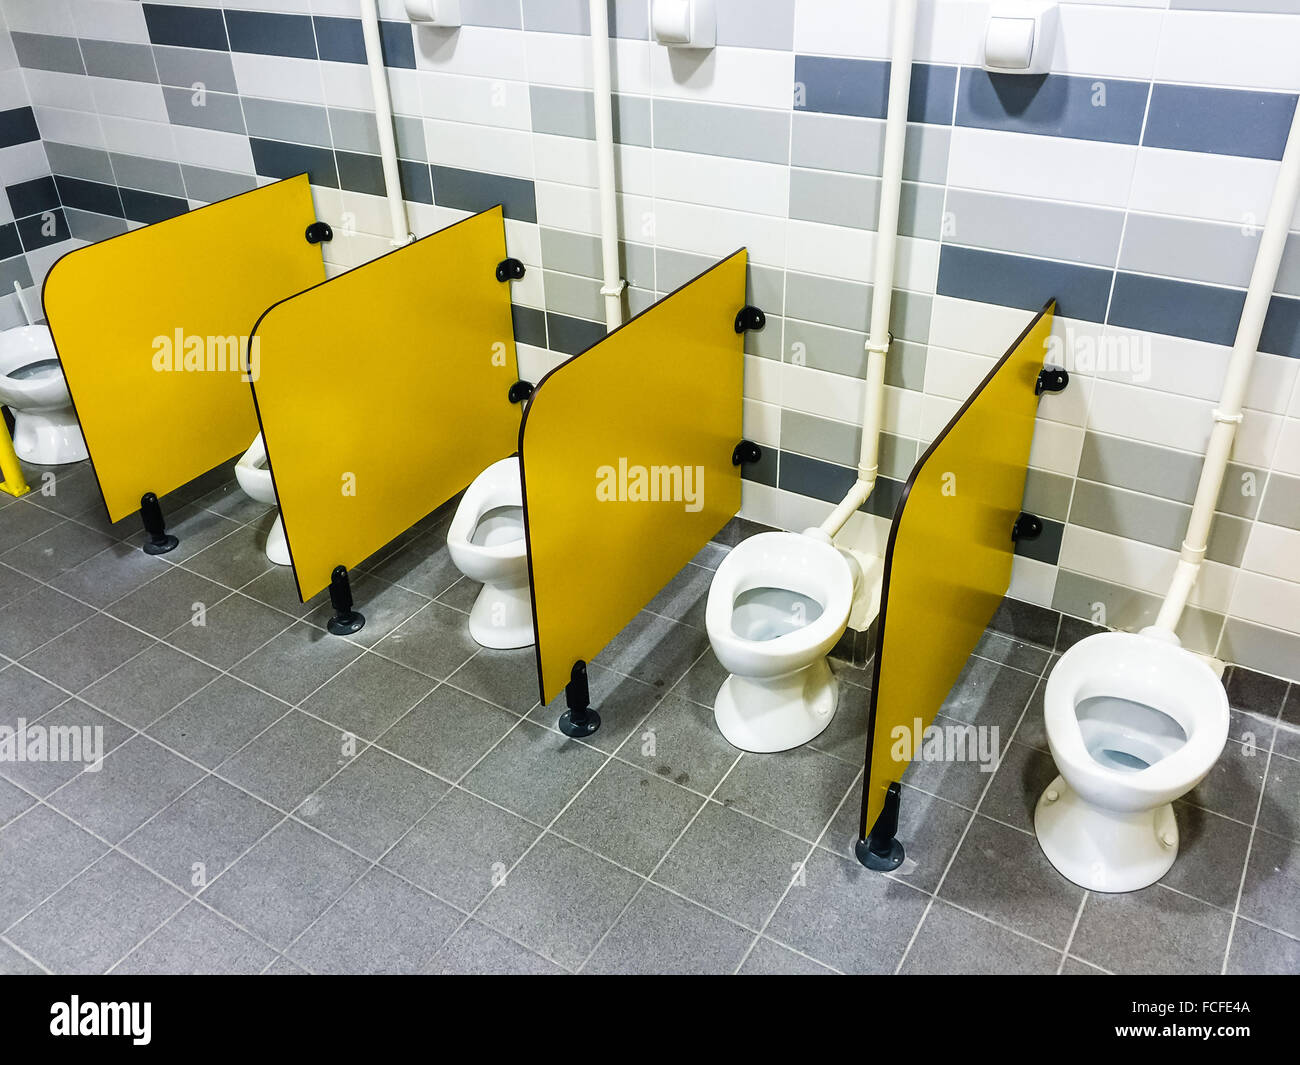 Toilettes dans l'école primaire Photo Stock - Alamy